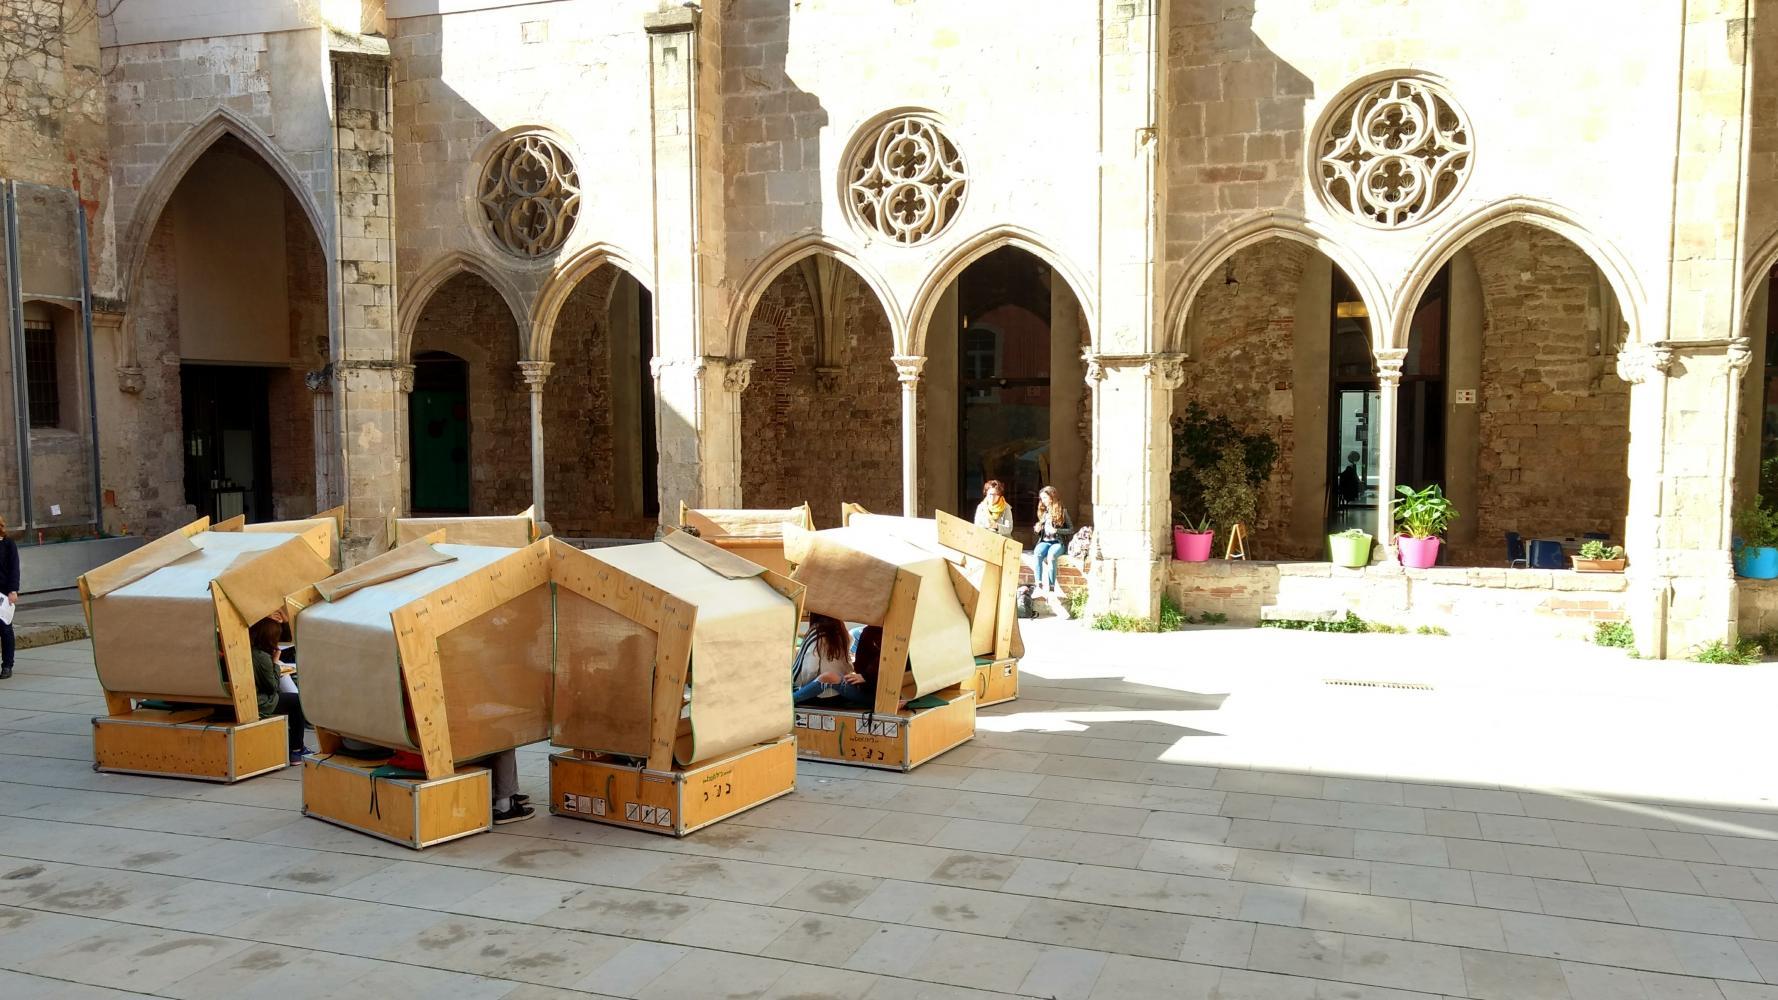 Aquests mòduls de fusta desmuntables, anomenats Beits, són un espai d'estudi i de concentració en el cor de l'espai urbà;